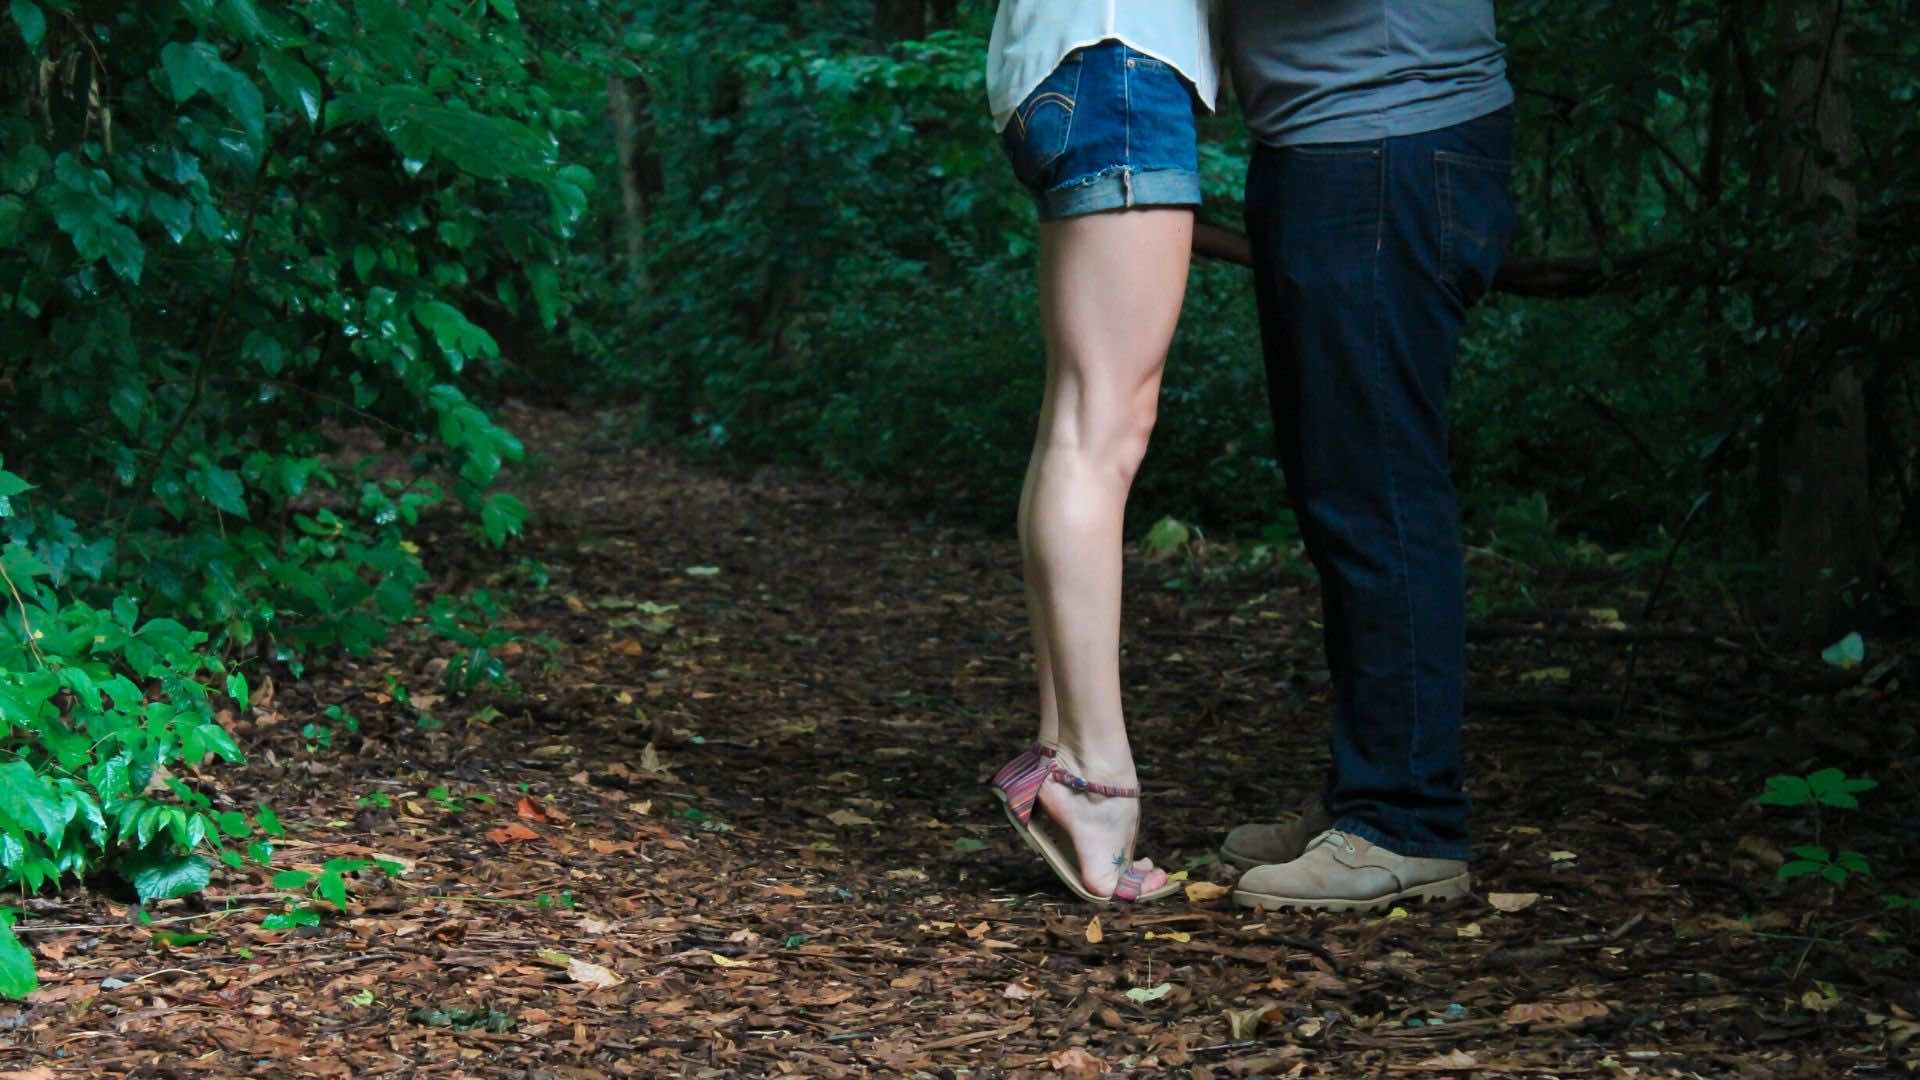 Kadın ve Erkeklerde Orgazm Bozukluğu (Anorgazmi) Nedir? Nedenleri ve Tedavisi